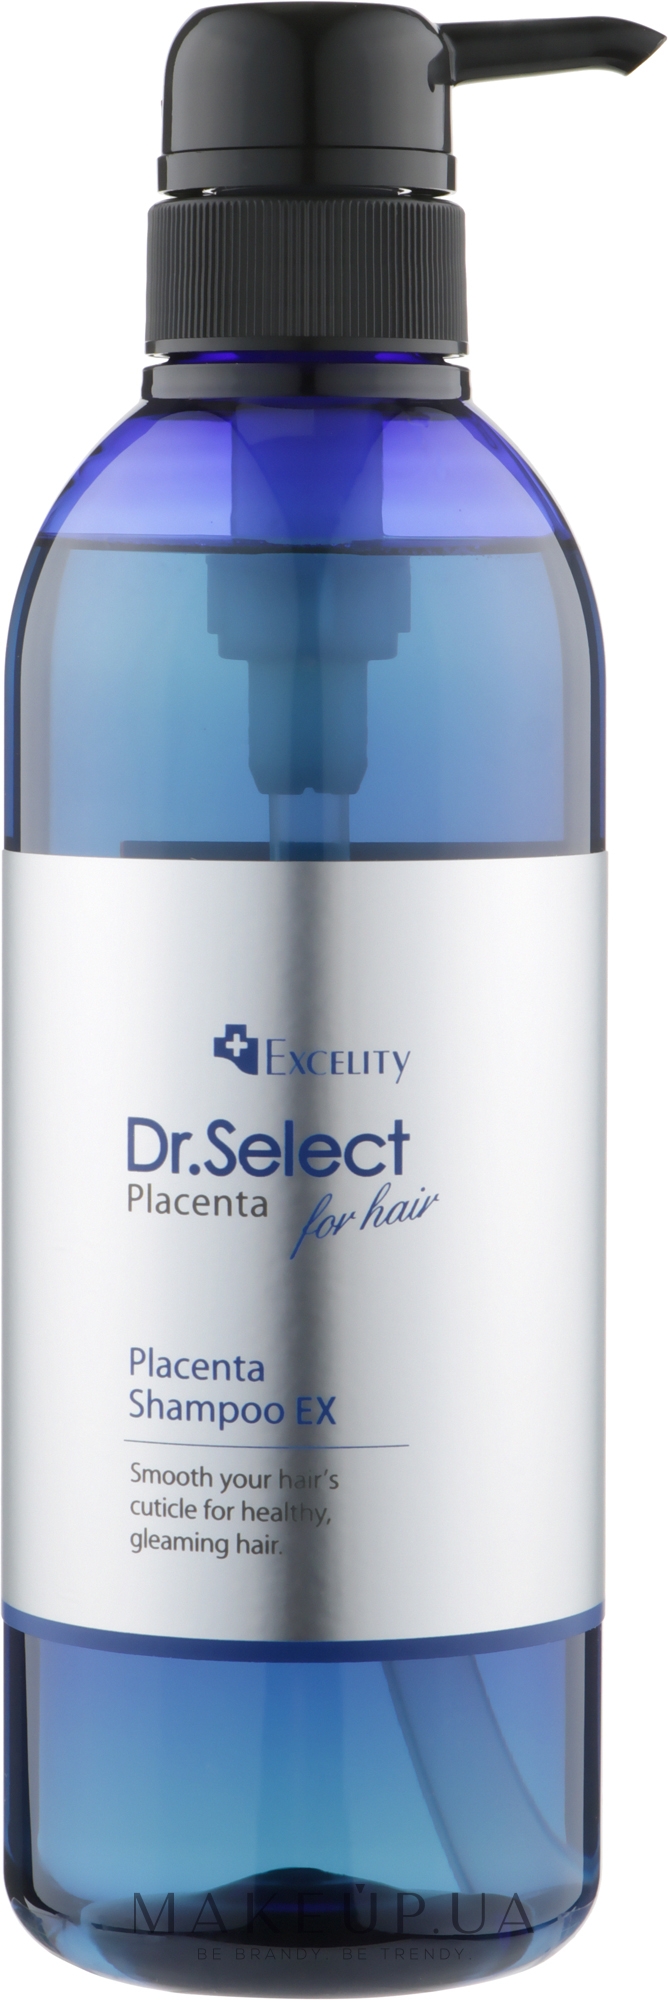 Концентрированный омолаживающий плацентарный шампунь для волос - Dr. Select Excelity Placenta Shampoo EX — фото 500ml